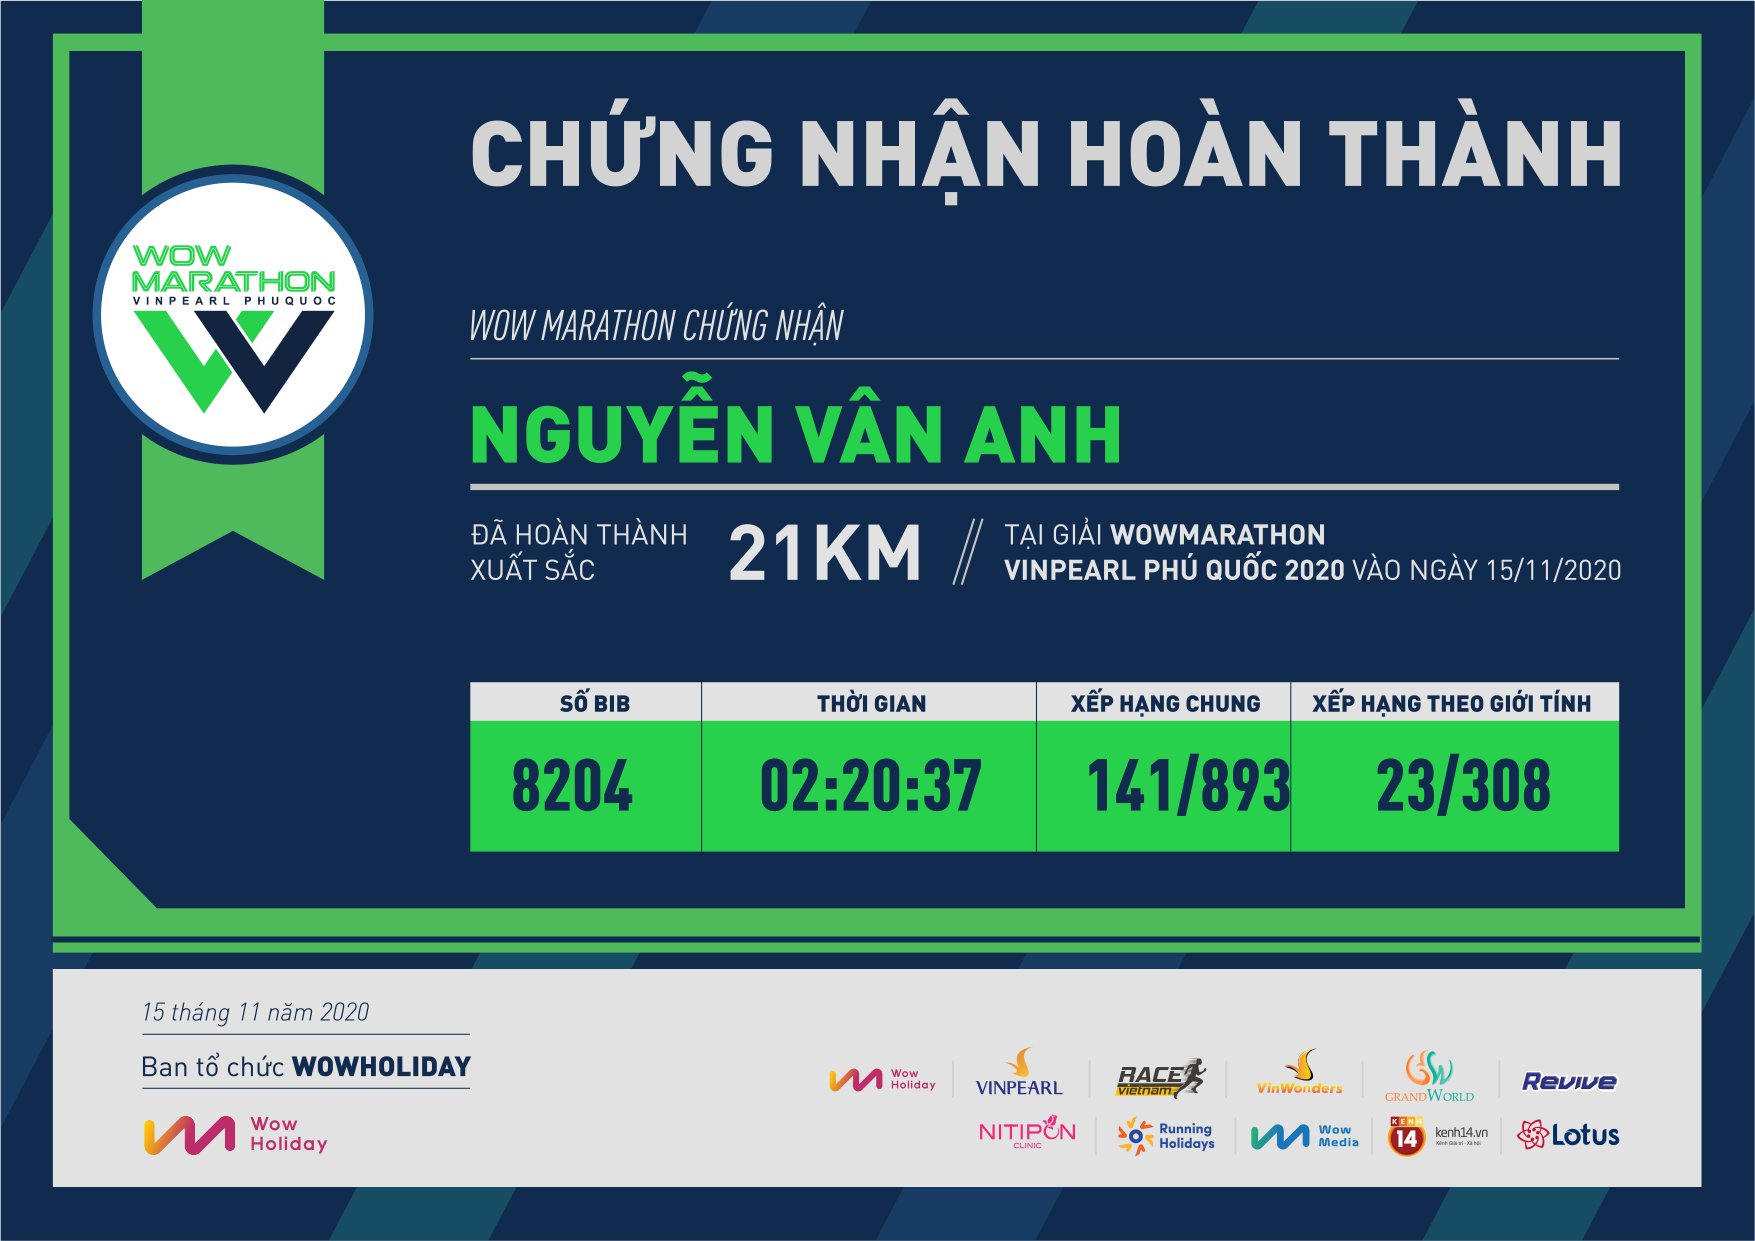 8204 - Nguyễn Vân Anh